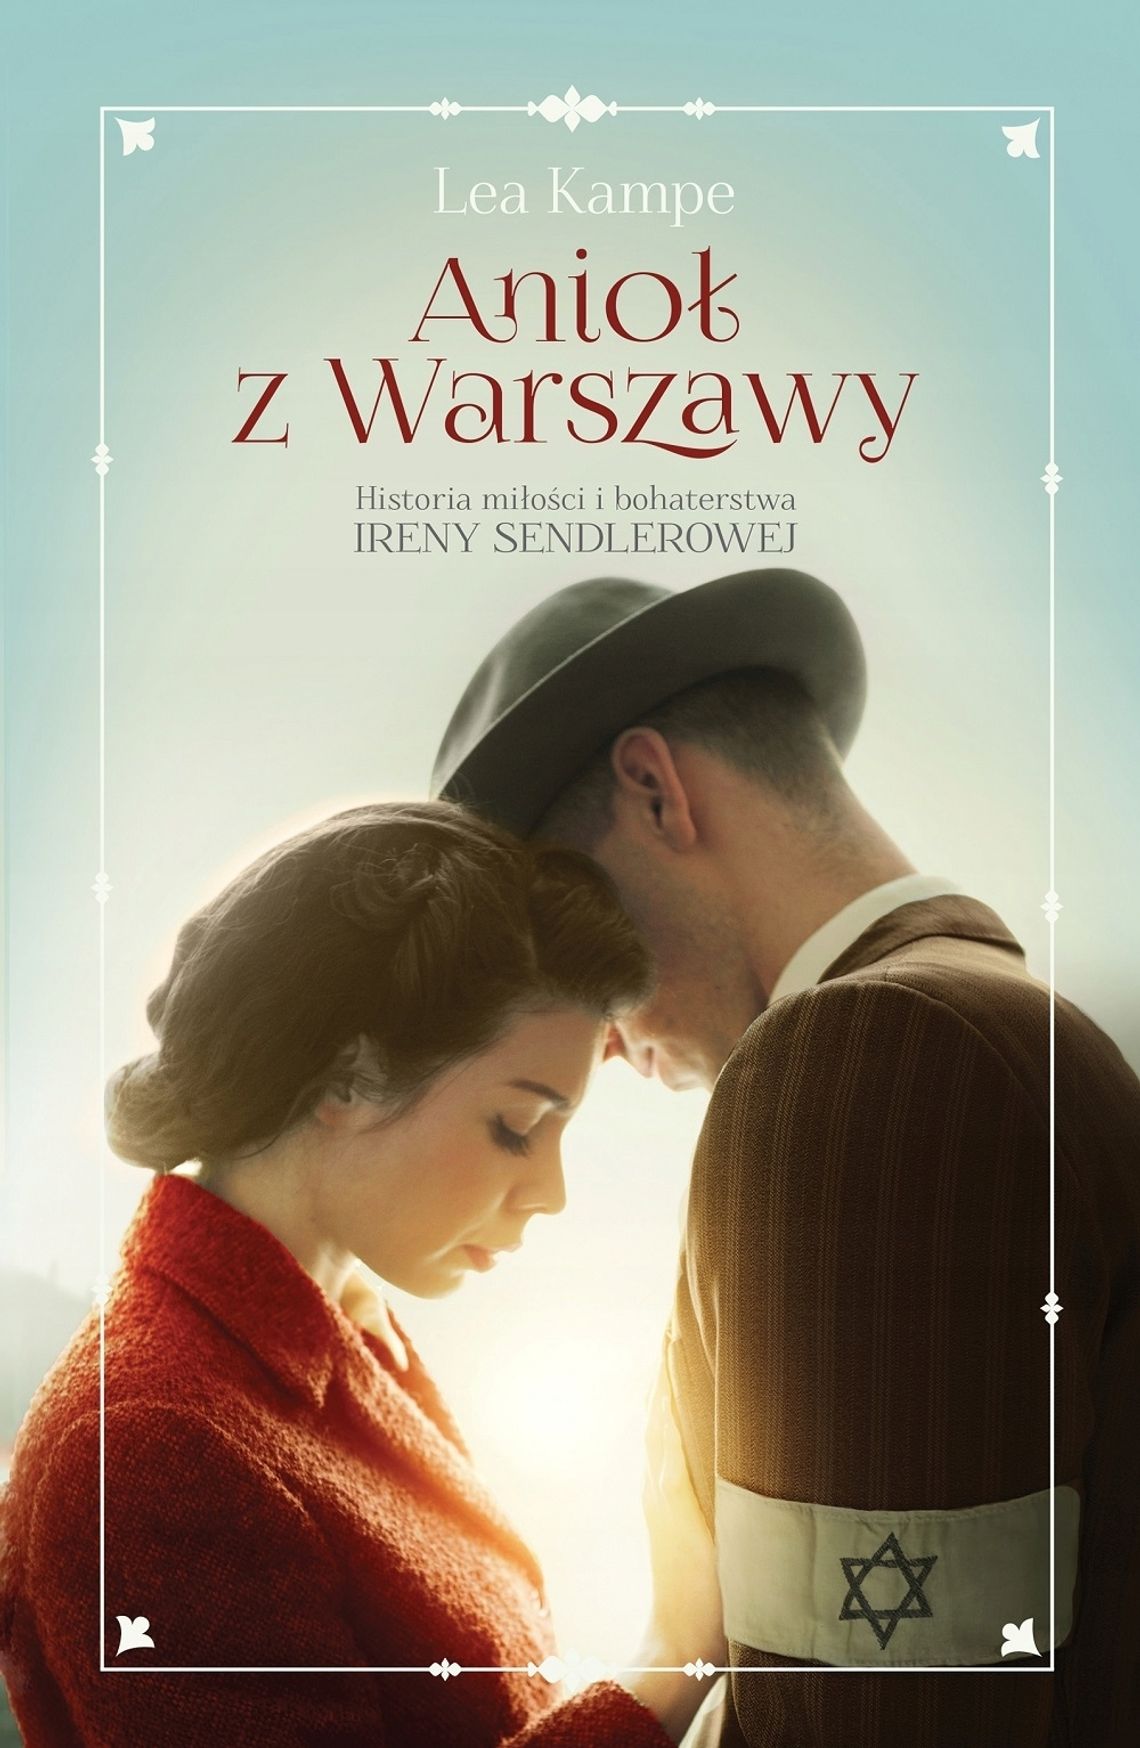 Lea Kampe "Anioł z Warszawy. Historia miłości i bohaterstwa Ireny Sendlerowej"; wyd. ZNAK